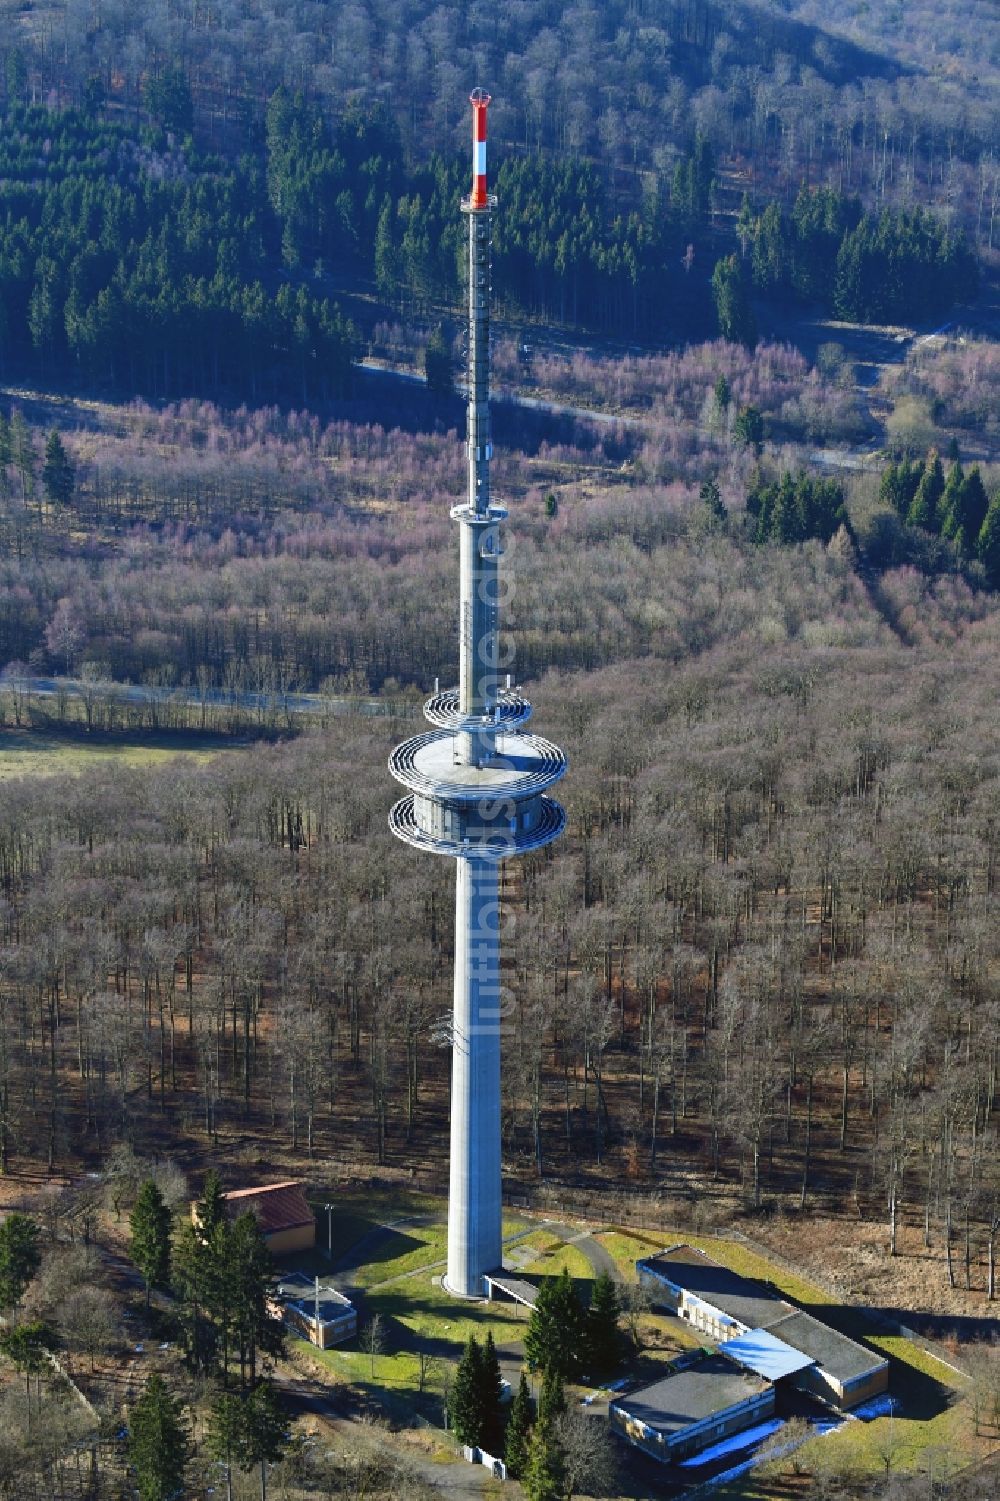 Habichtswald von oben - Fernmeldeturm und Fernsehturm in Habichtswald im Bundesland Hessen, Deutschland